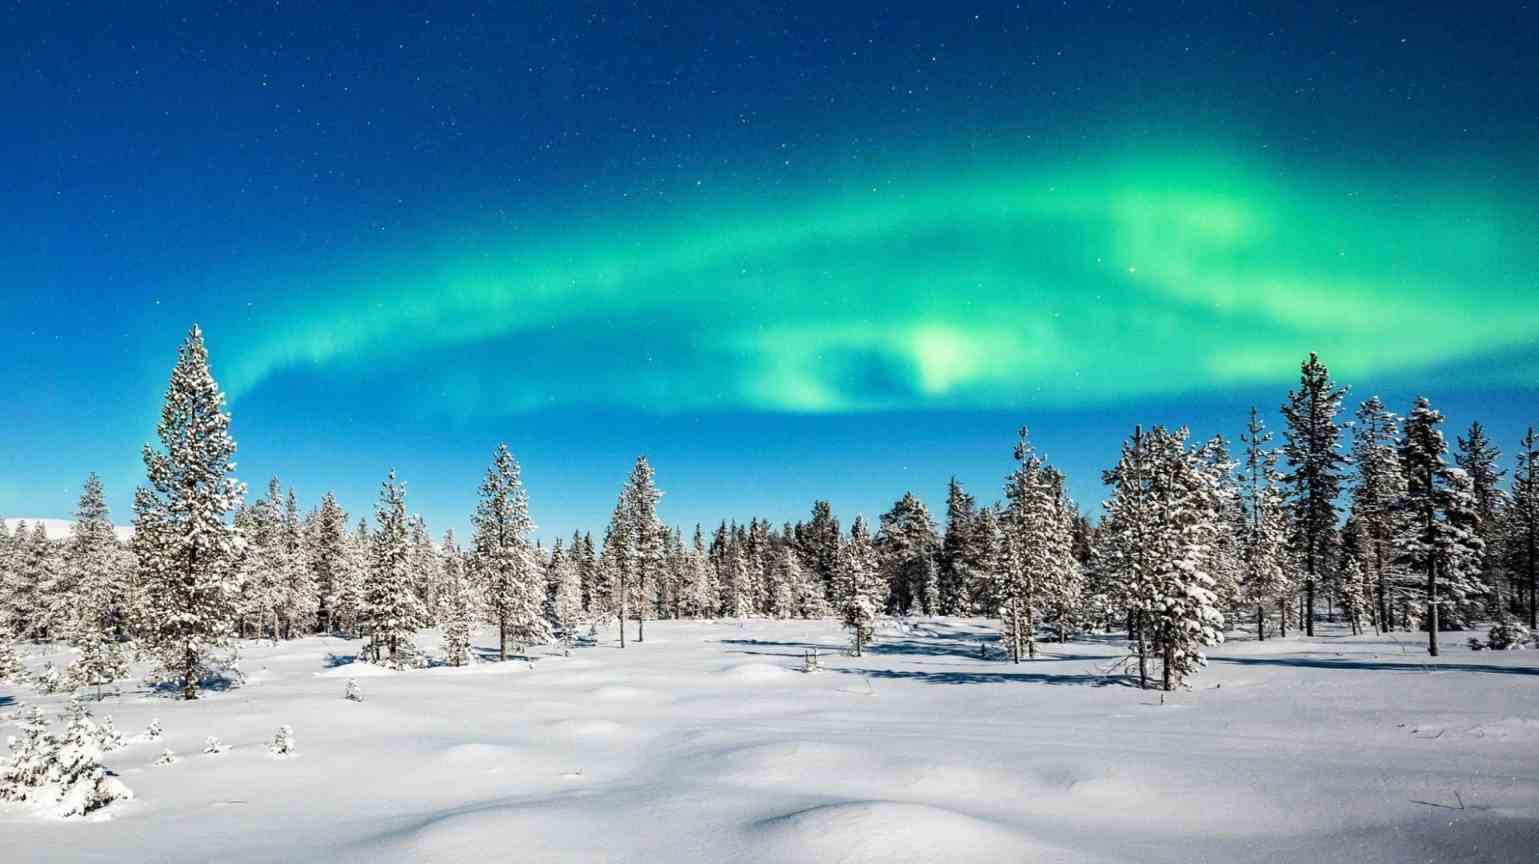  عکس کشور فنلاند